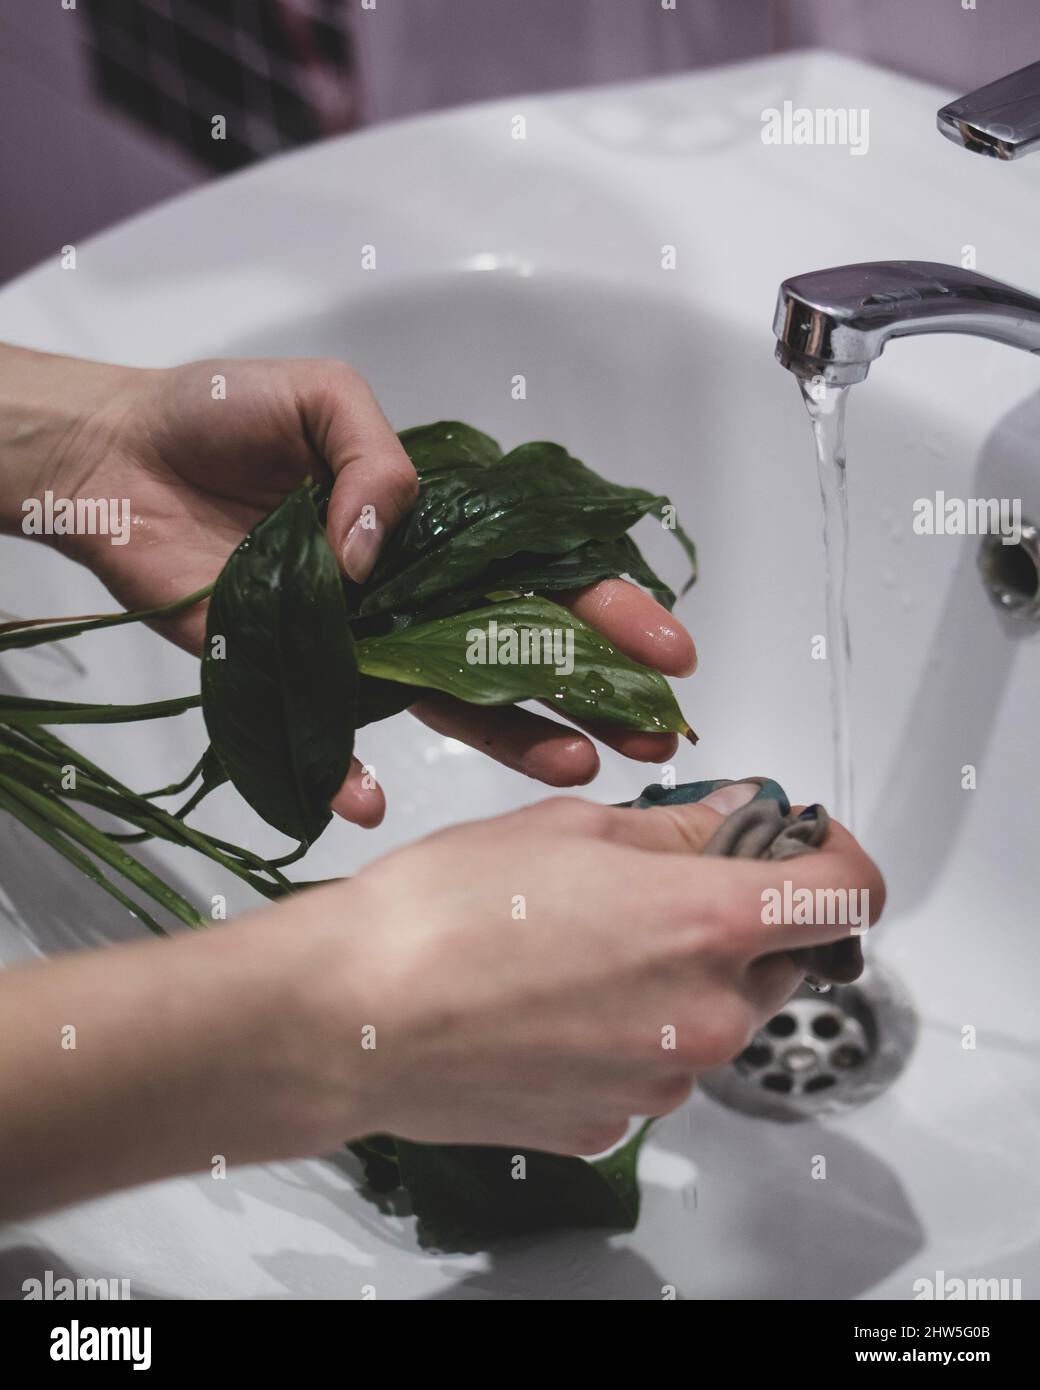 La donna sta pulendo la pianta dagli insetti sotto il rubinetto Foto Stock